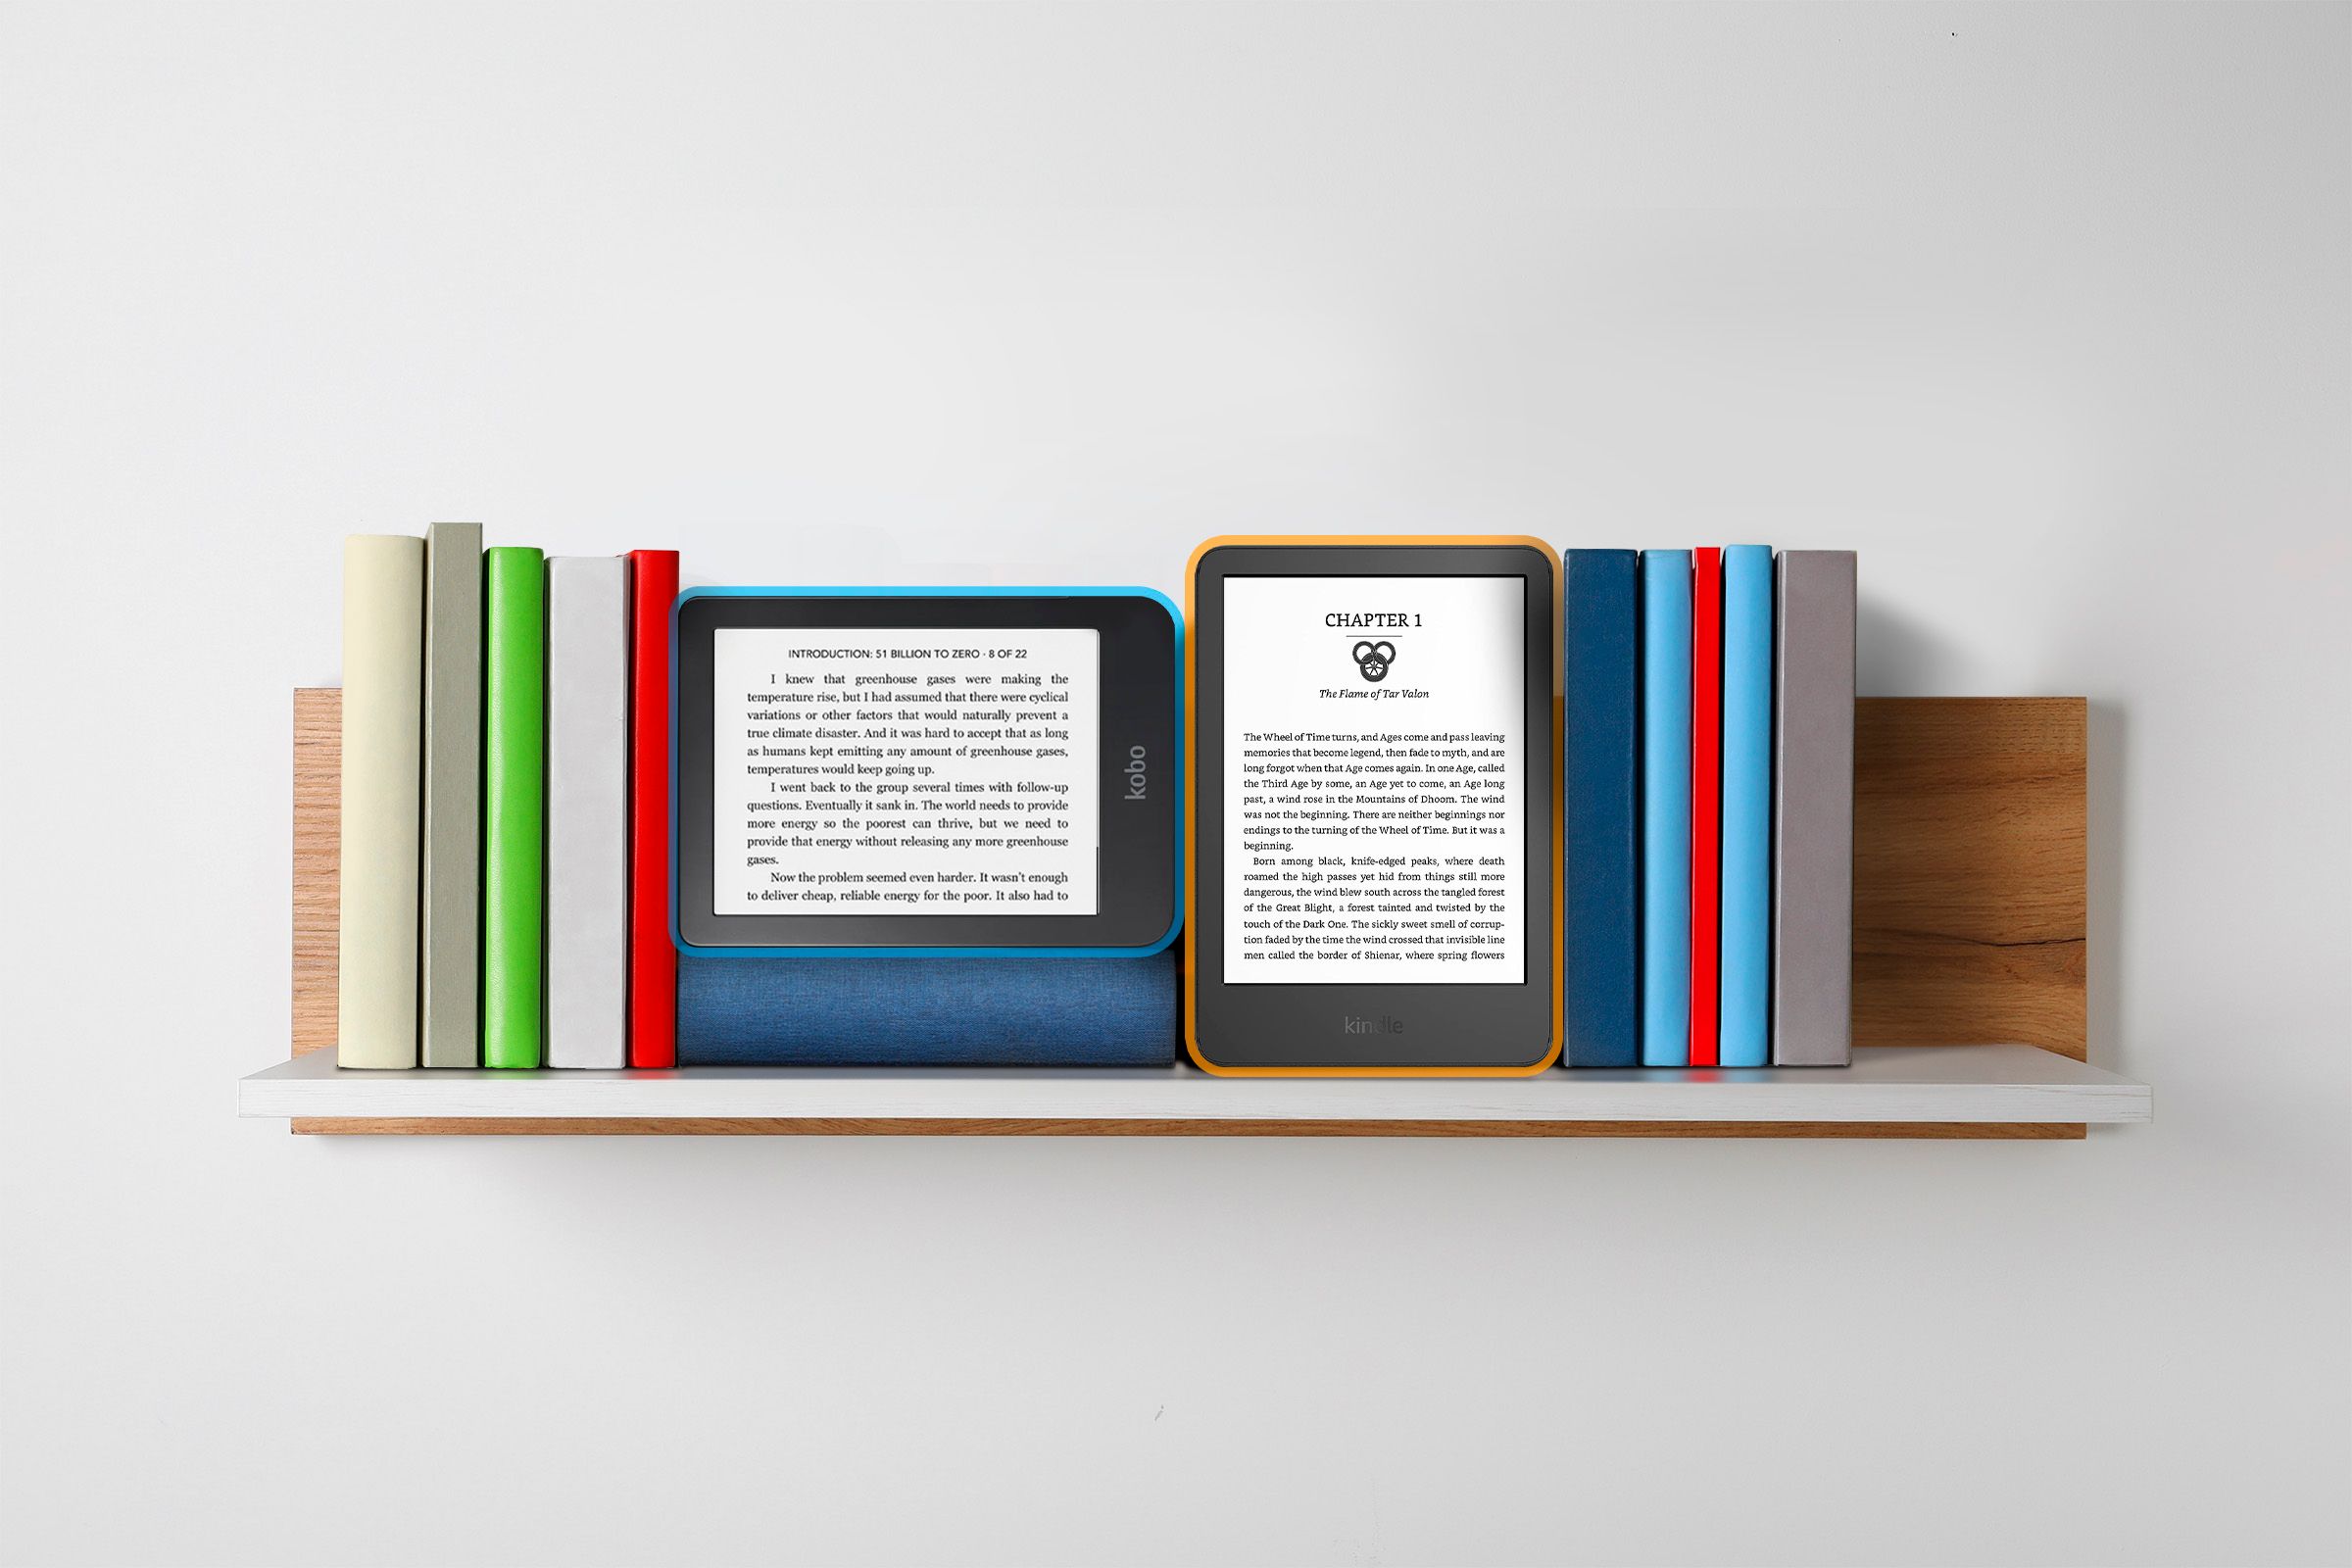 A Kobo and a Kindle side by side on a shelf with a few books.